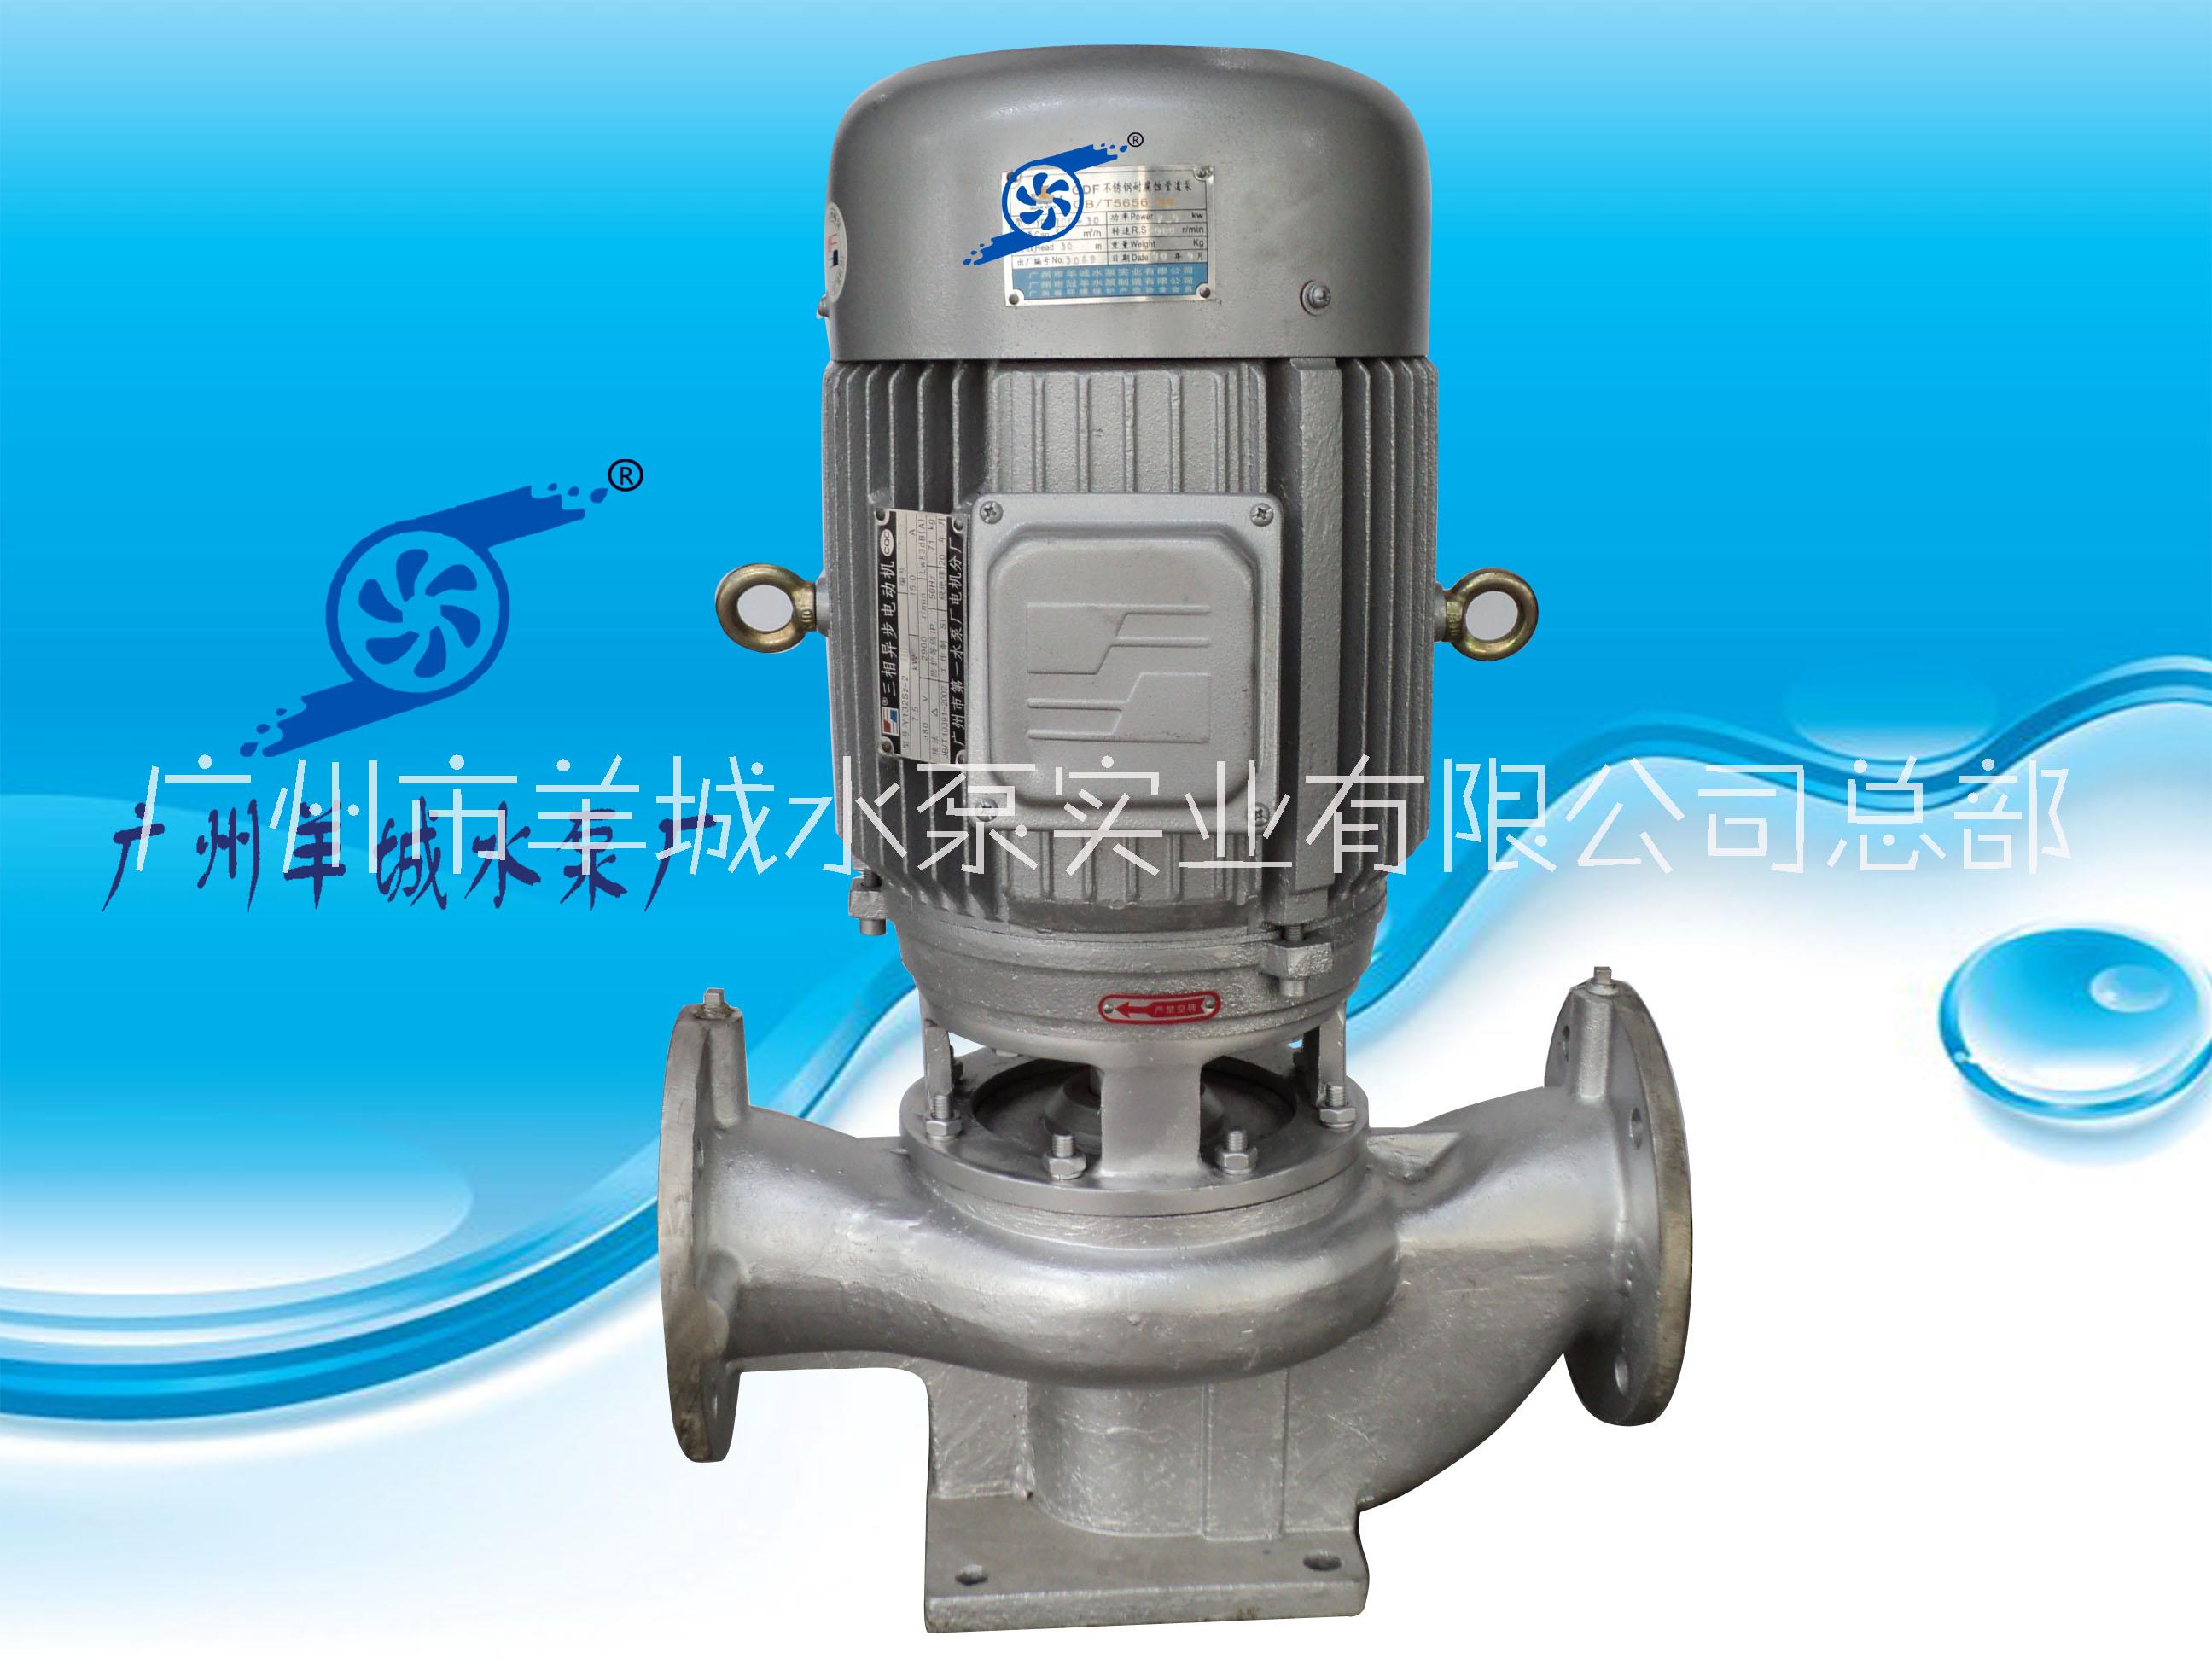 羊城水泵|不锈钢管道泵|广州羊城水泵厂|耐腐蚀管道泵|羊城泵业